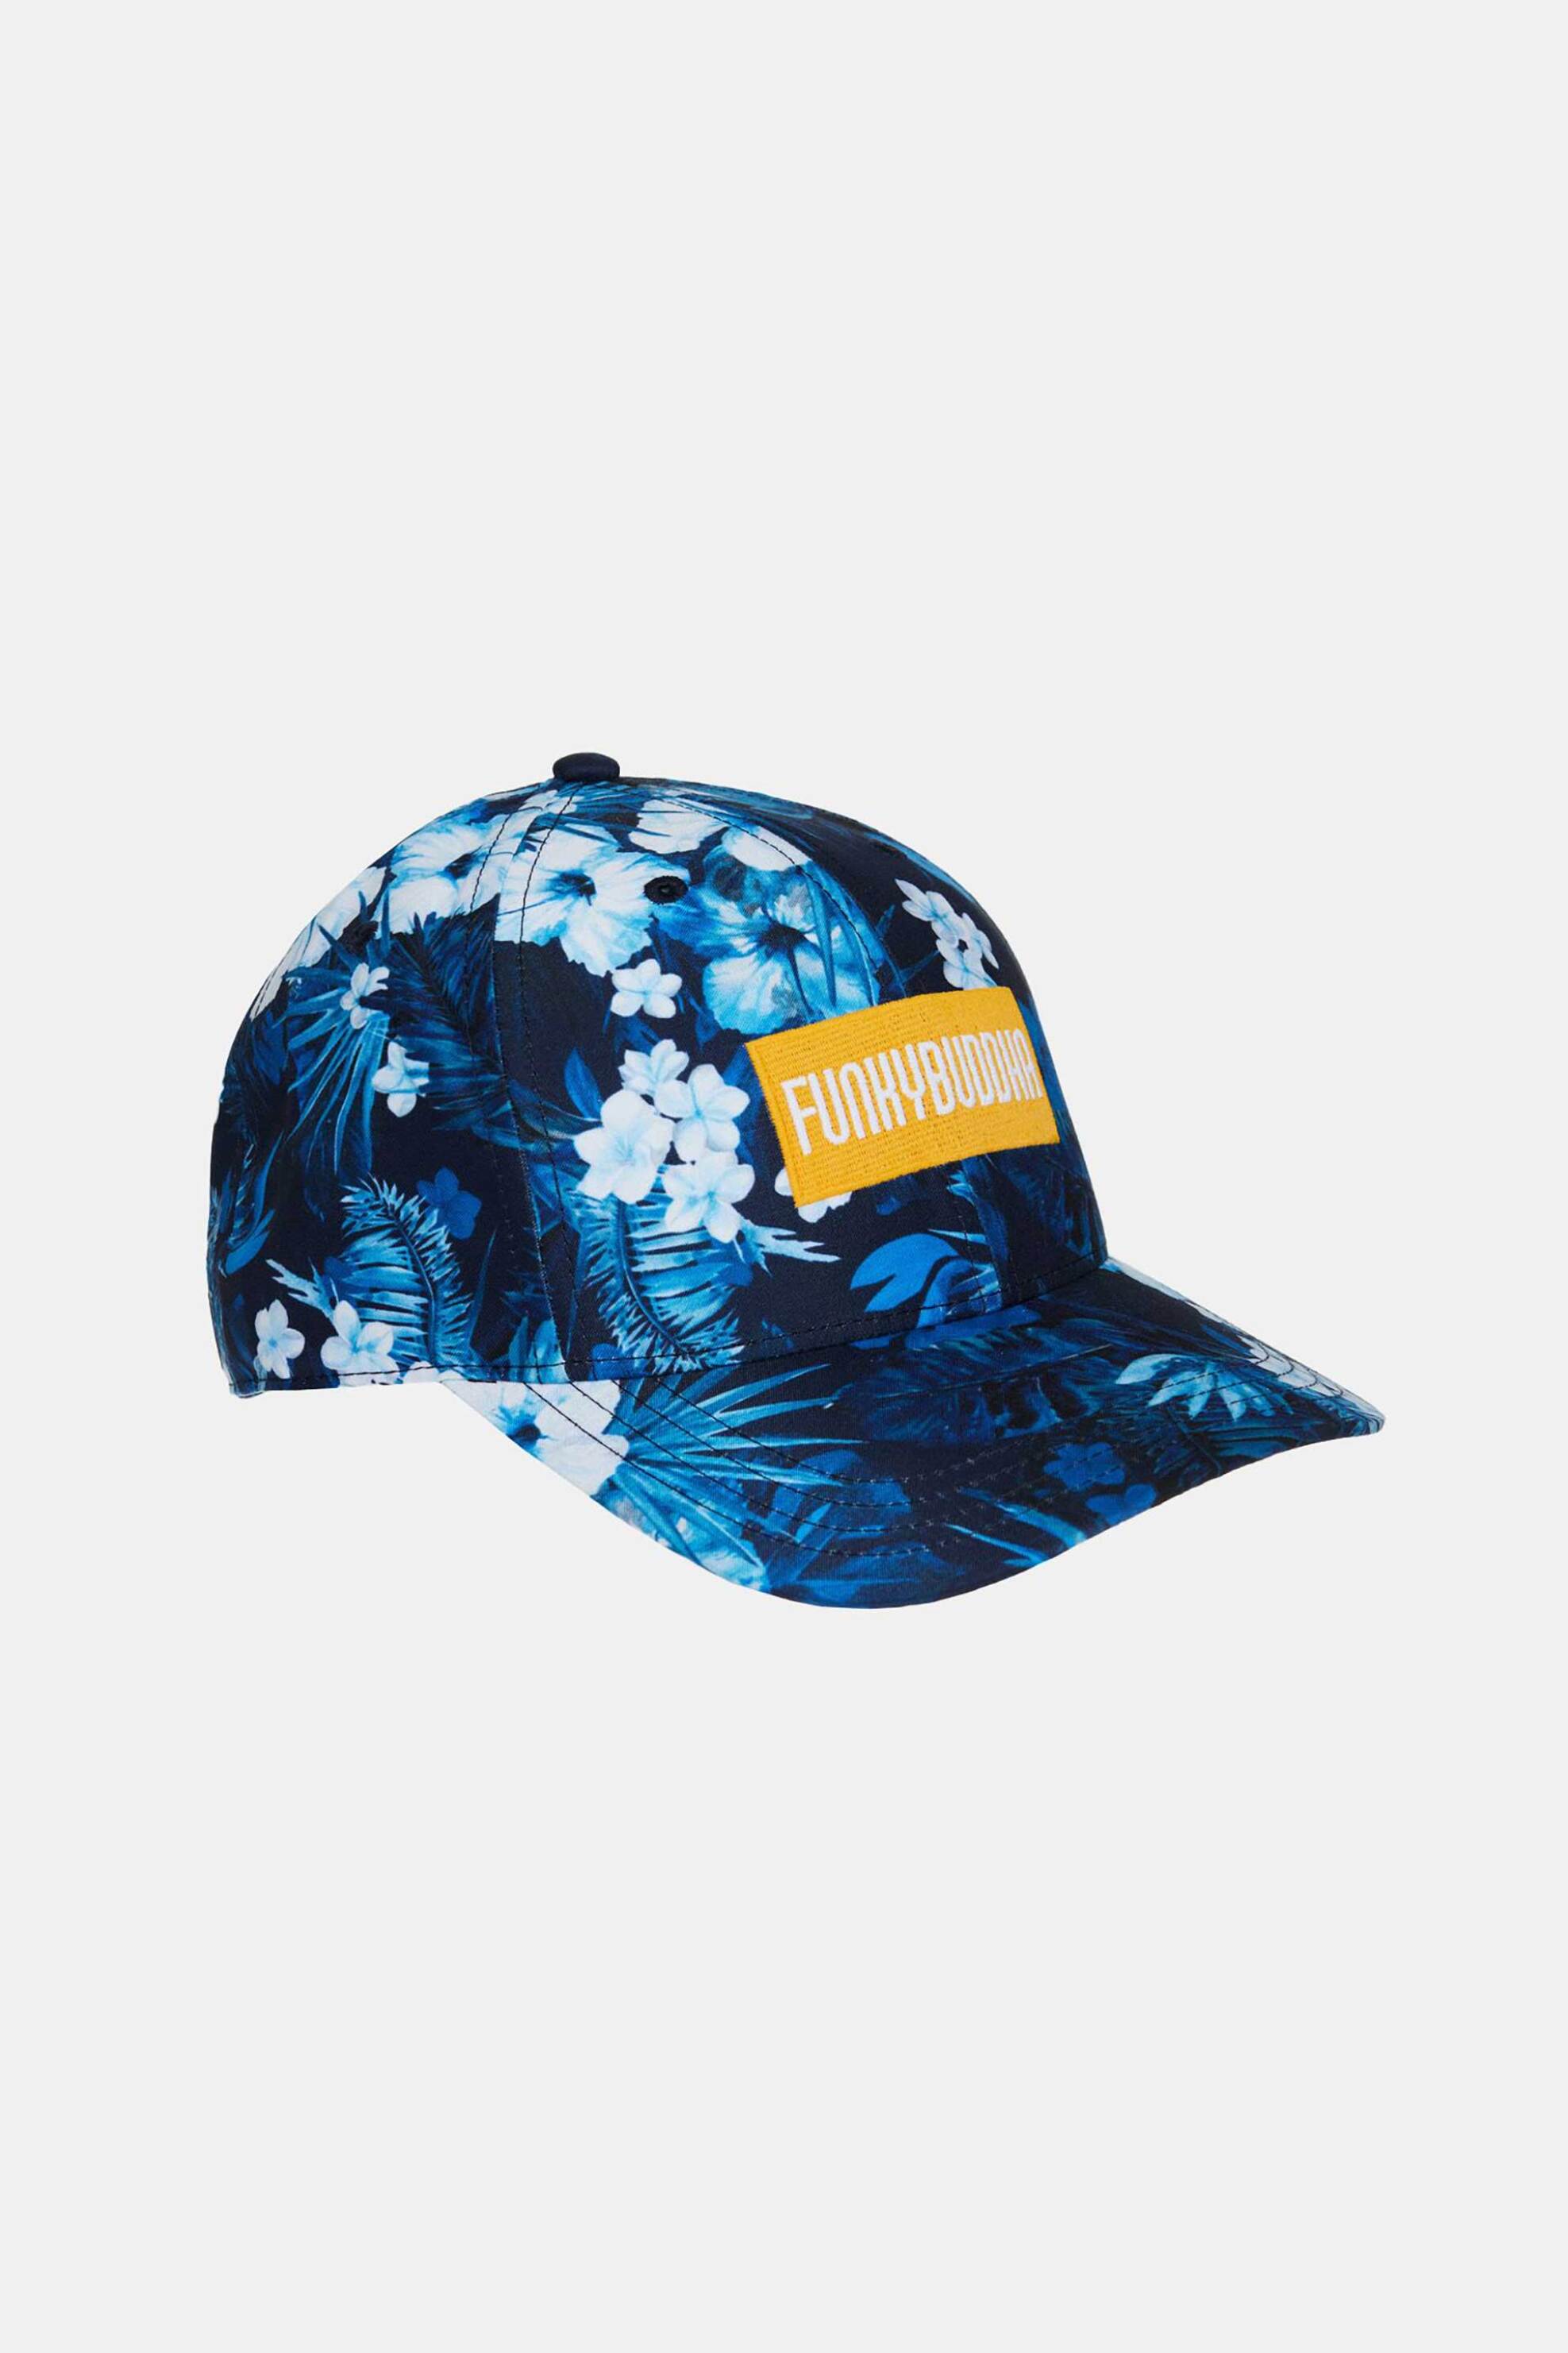 Ανδρική Μόδα > Ανδρικά Αξεσουάρ > Ανδρικά Καπέλα & Σκούφοι Funky Buddha ανδρικό καπέλο jockey με all-over floral print και κεντημένο λογότυπο - FBM007-071-10 Σκούρο Μπλε